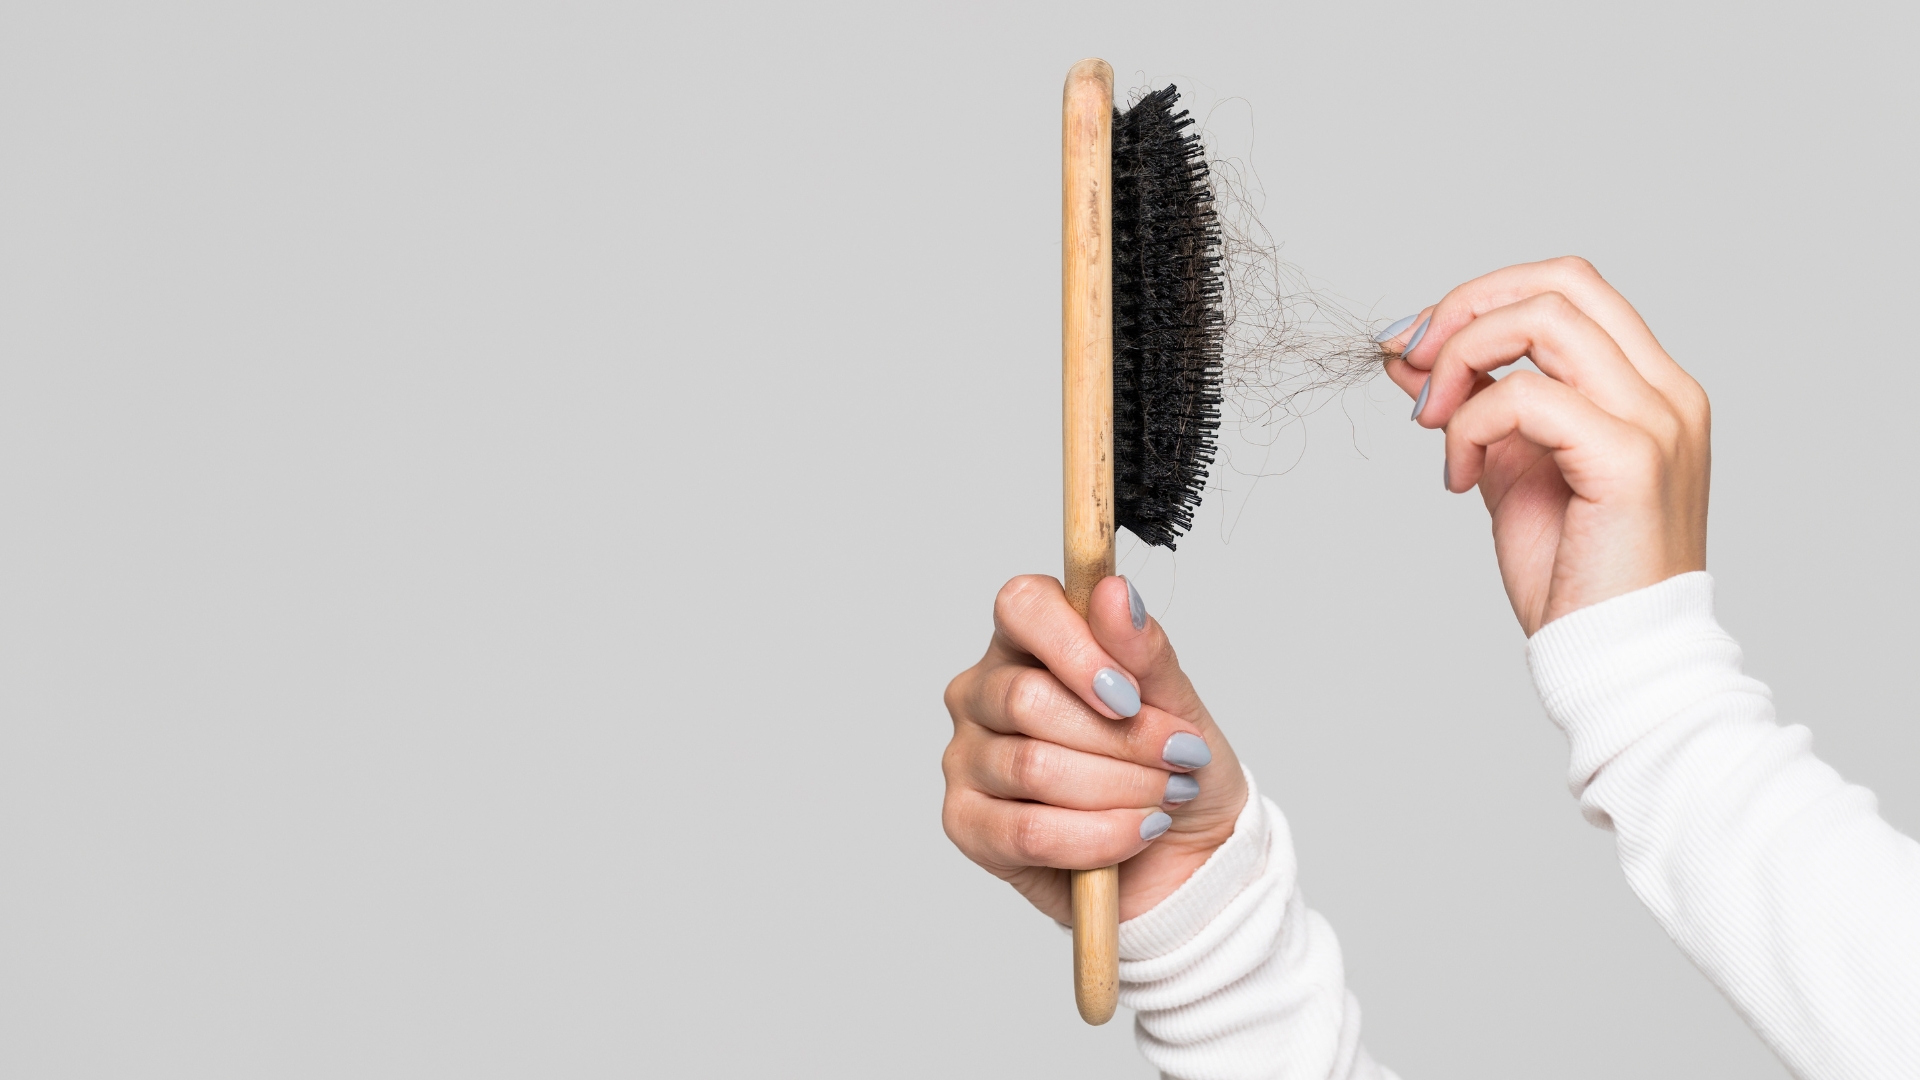 come pulire la spazzola per capelli sporca